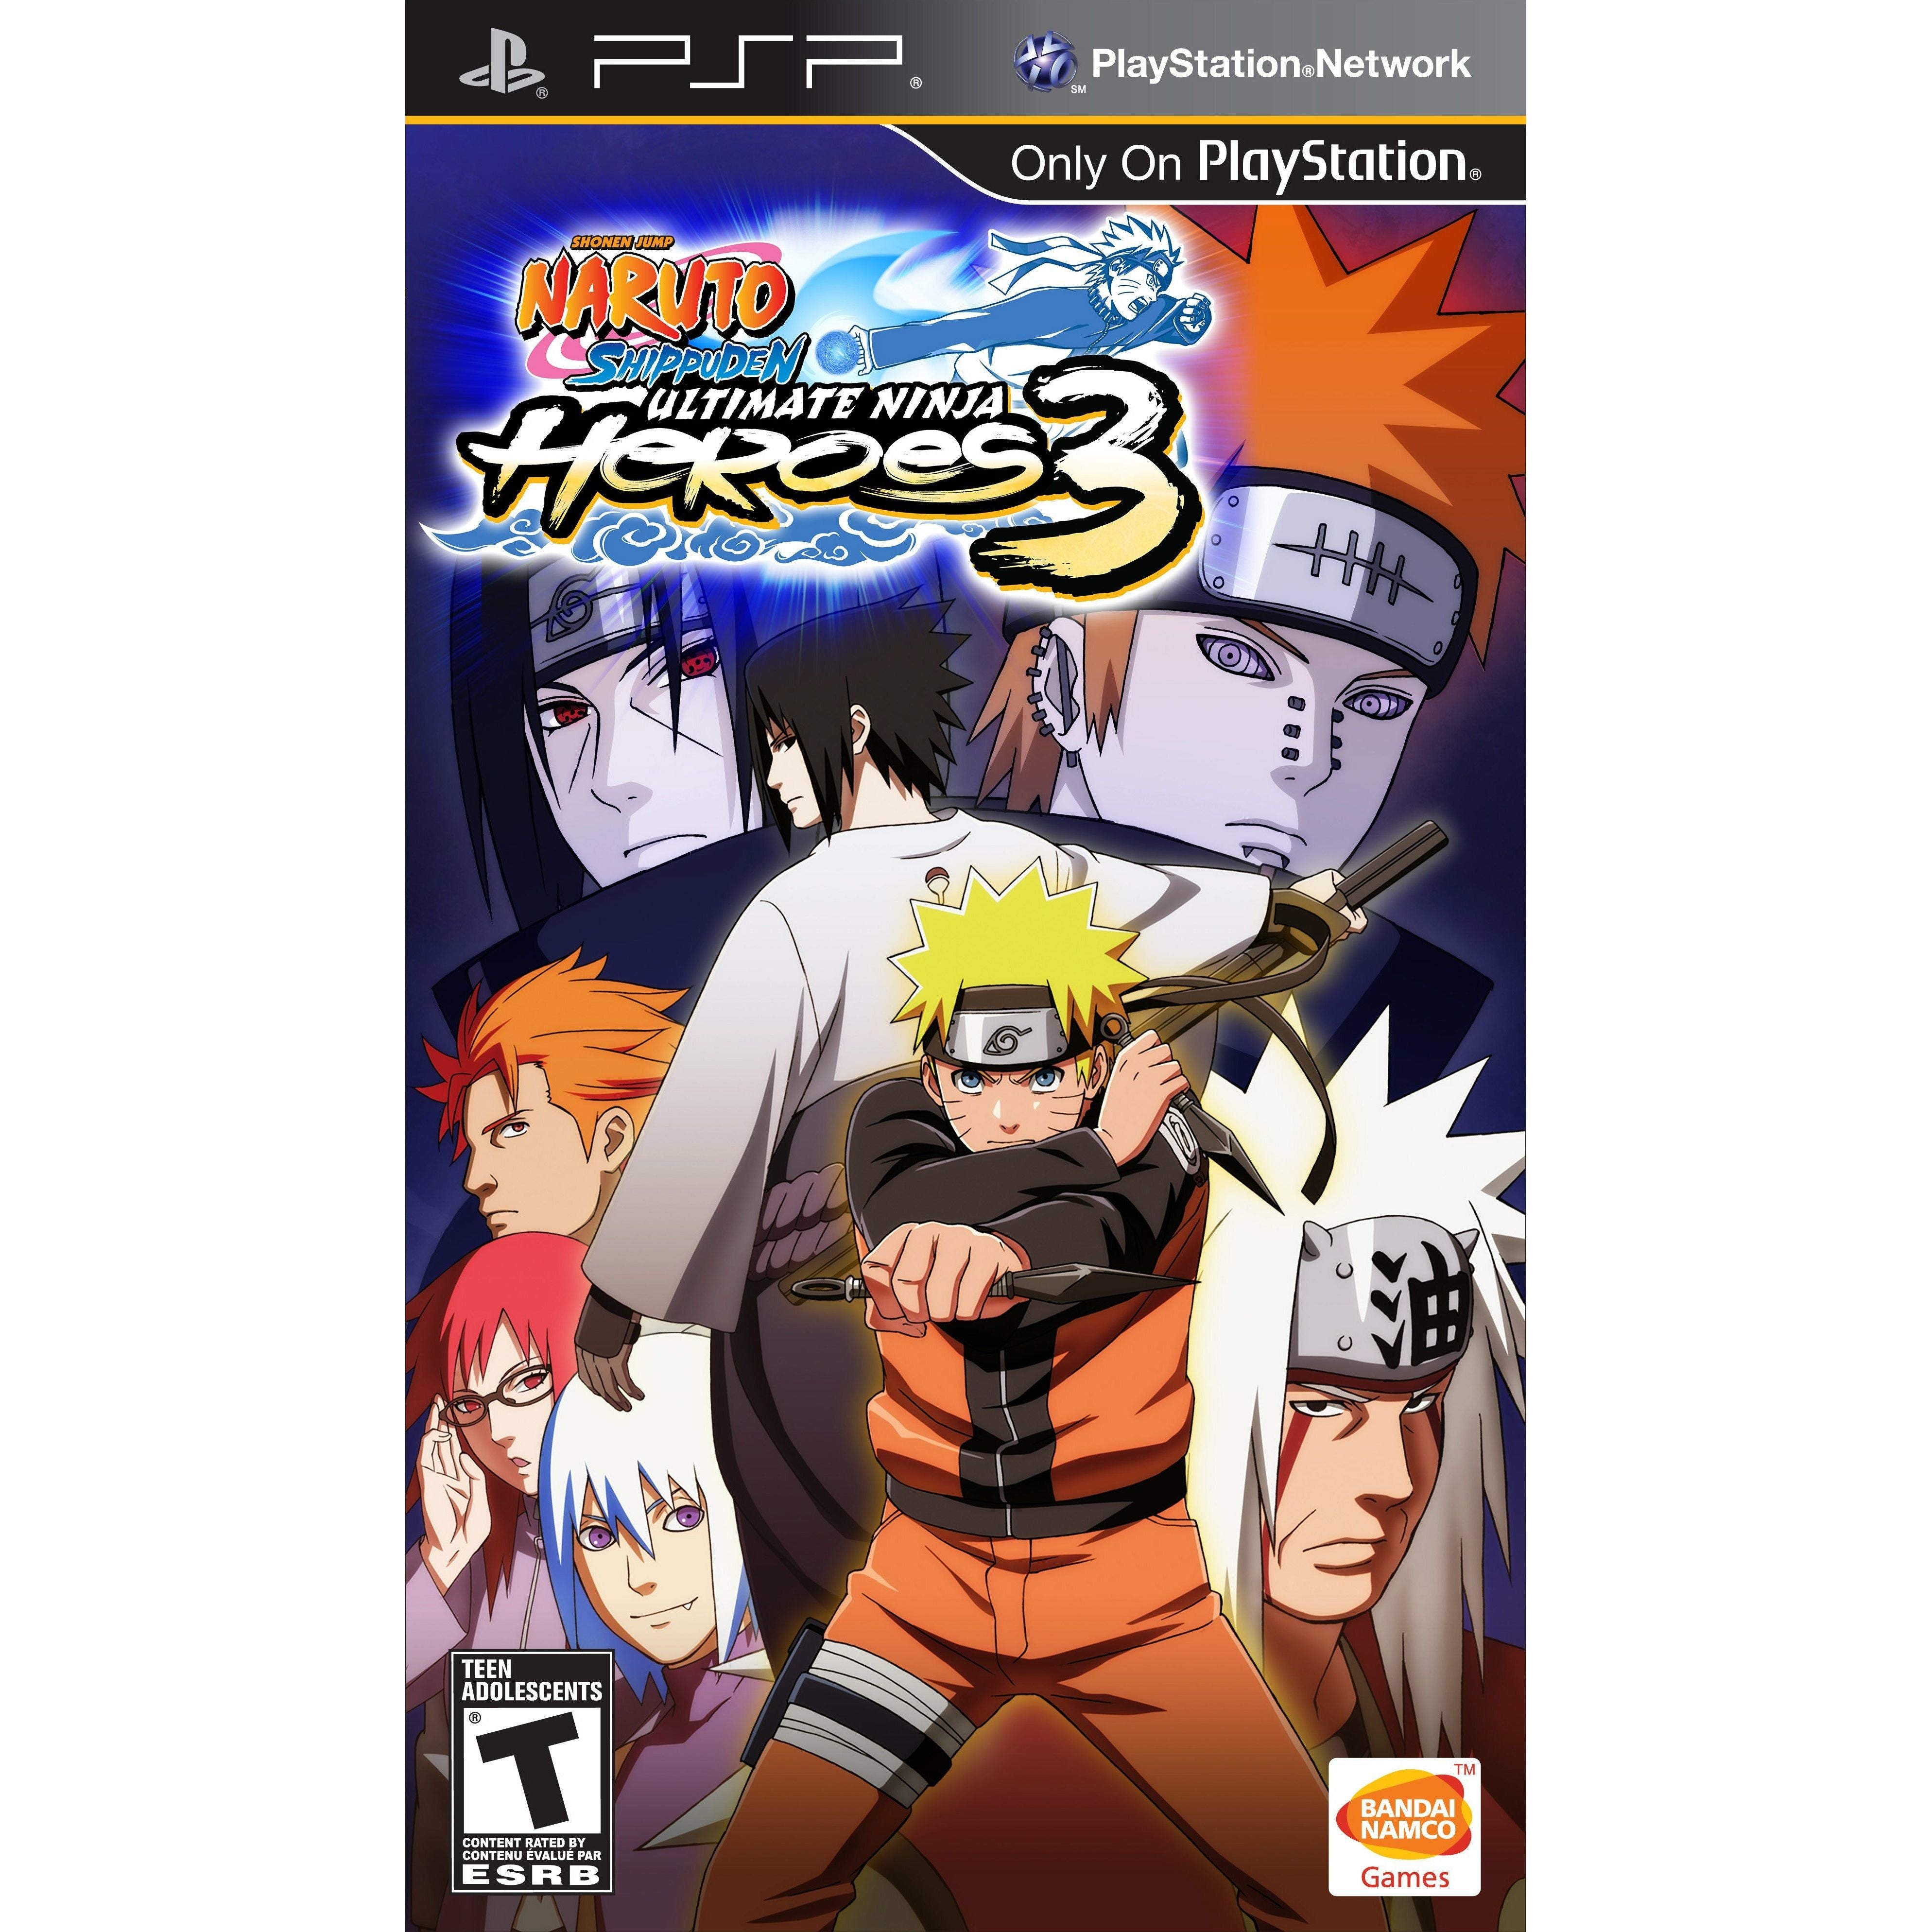 PSP - Naruto Shippuden Ultimate Ninja Heroes 3 (In Case)